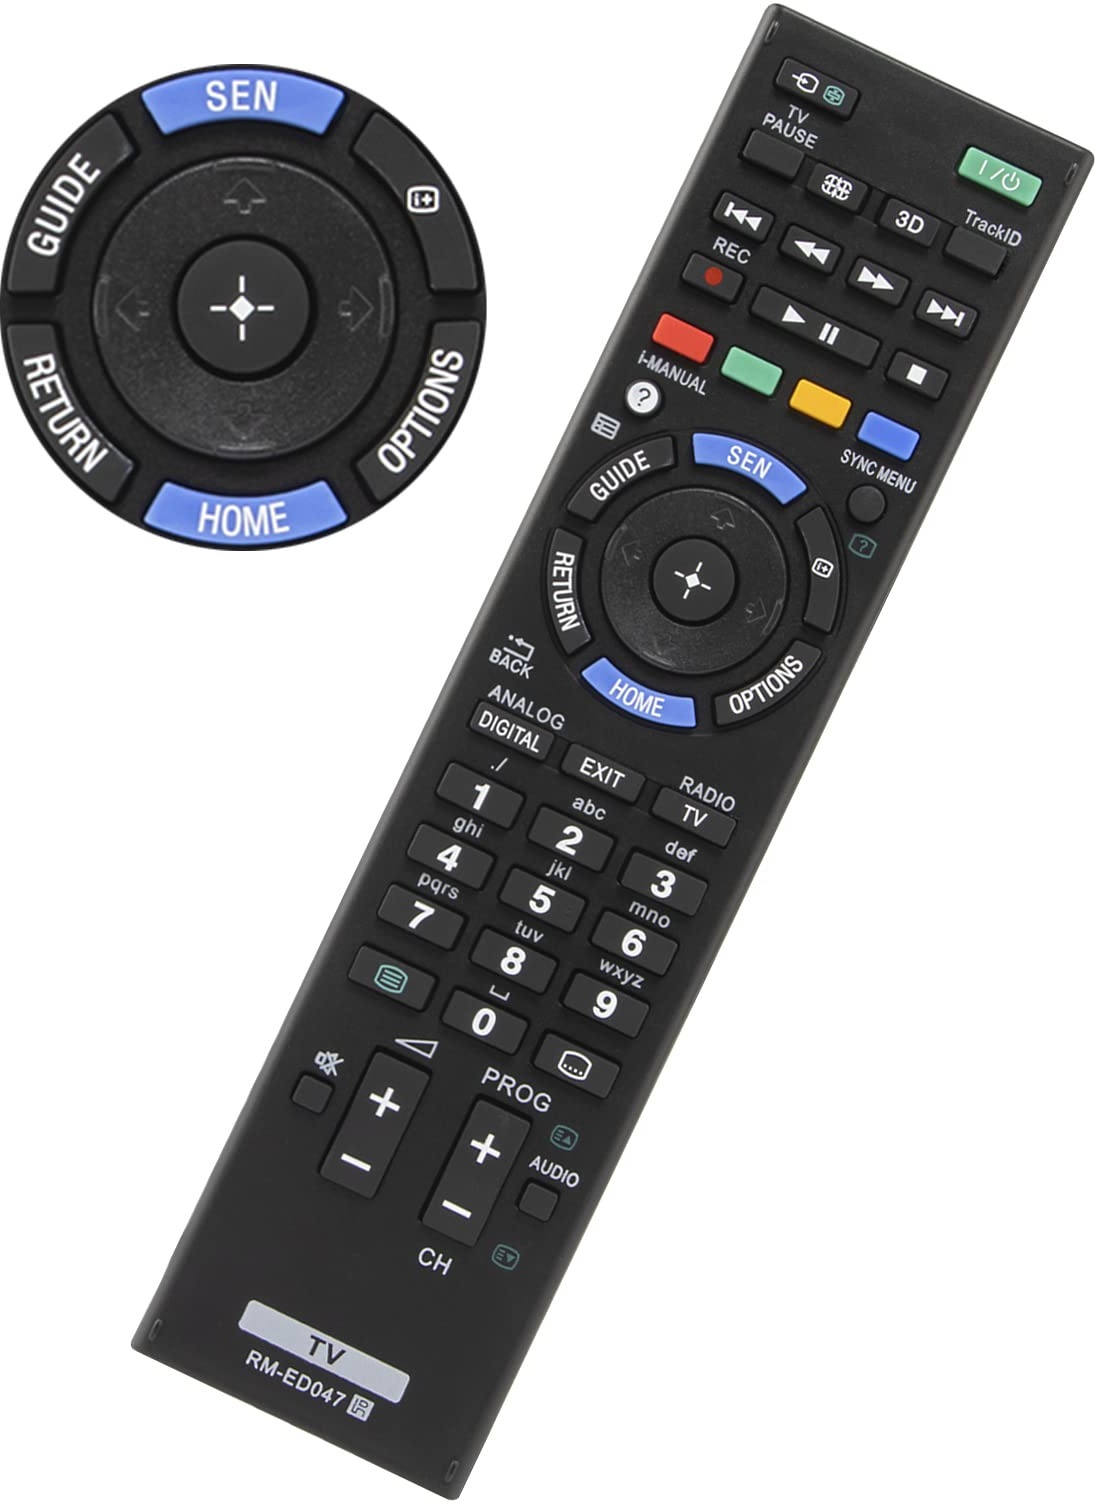 Universal-Ersatz für Sony Bravia TV Fernbedienung, YiBiChin RM-ED047 Kompatibel mit Sony Smart TV Fernbedienung RM-YD103 RM-ED050 RM-ED052 RM-ED053 RM-ED060 RM-ED061, kein Setup erforderlich